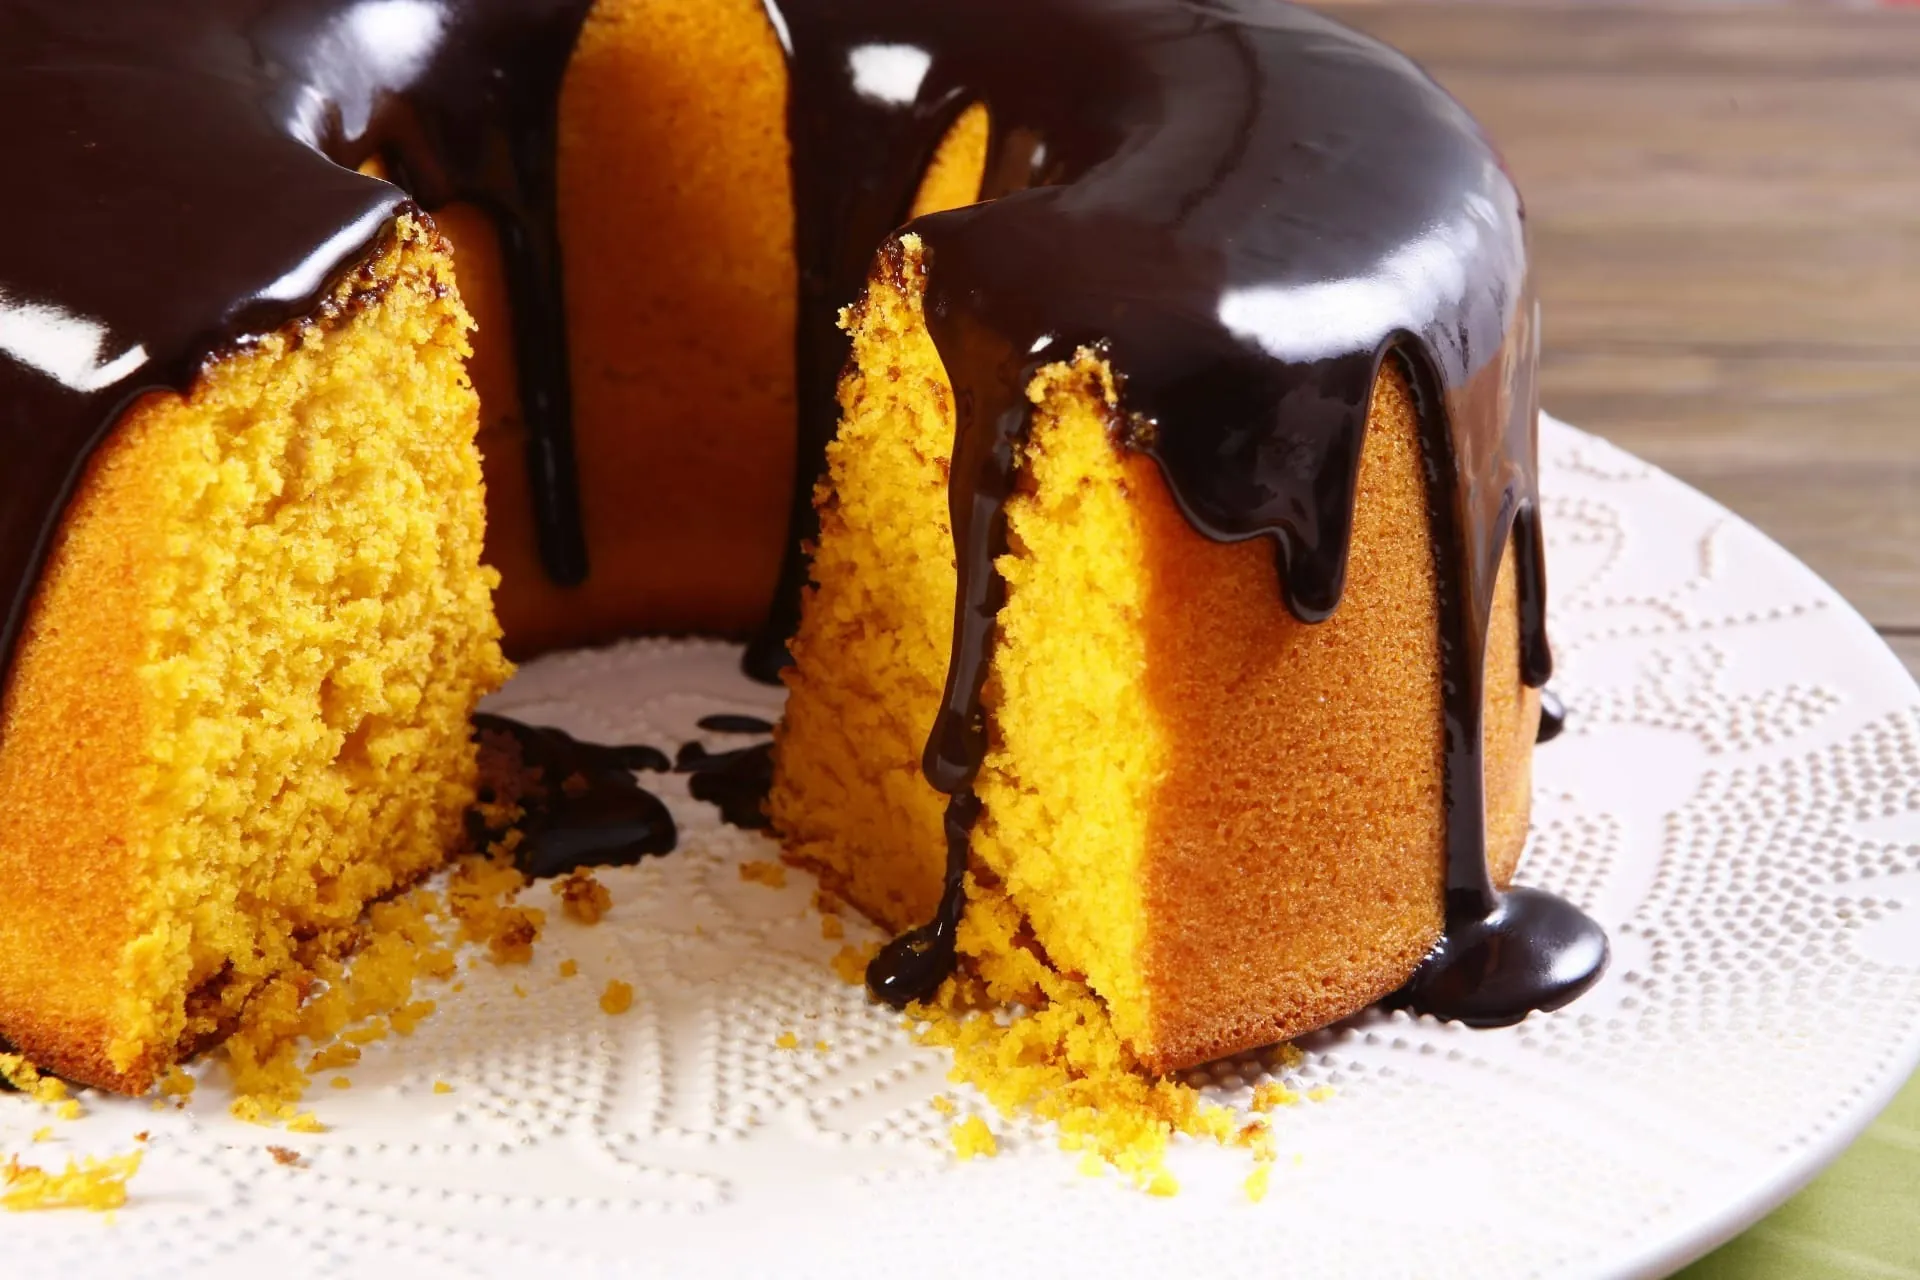 Segredos de cozinha: Como fazer a massa perfeita para bolos